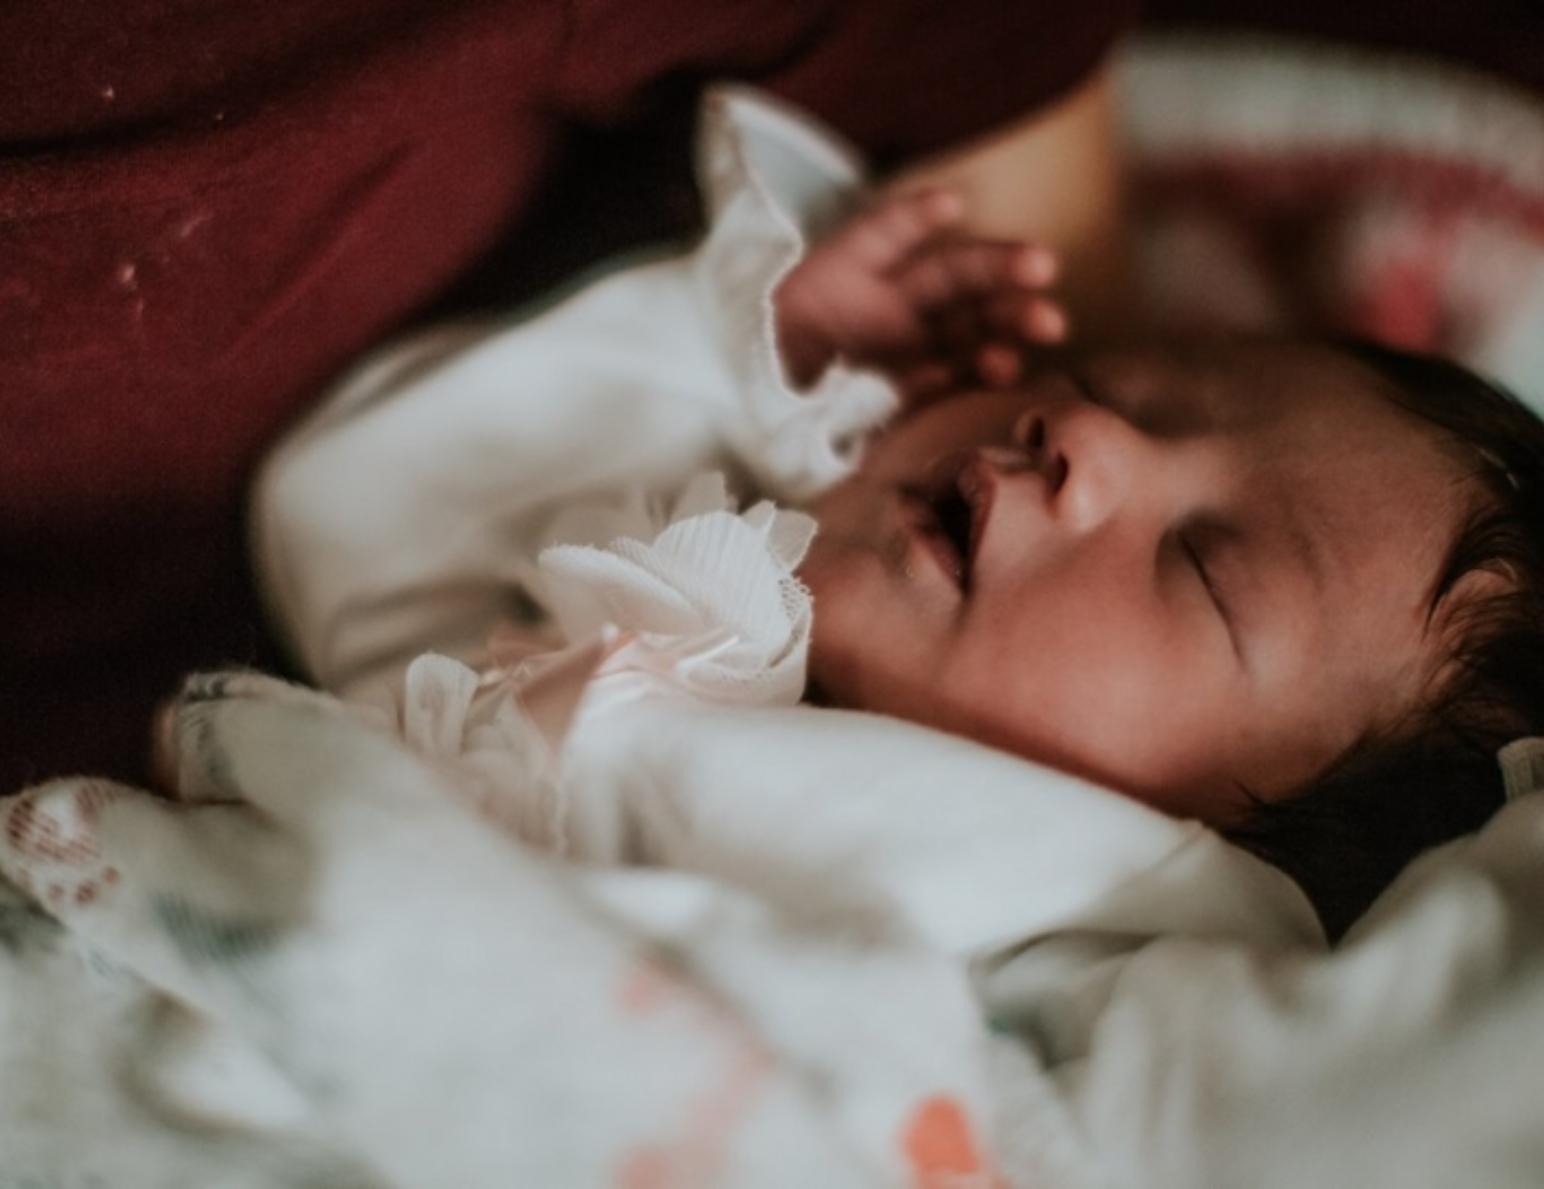 Σαράντα μέρες το μωρό στο σπίτι: Μήπως βλάπτει το παιδί;